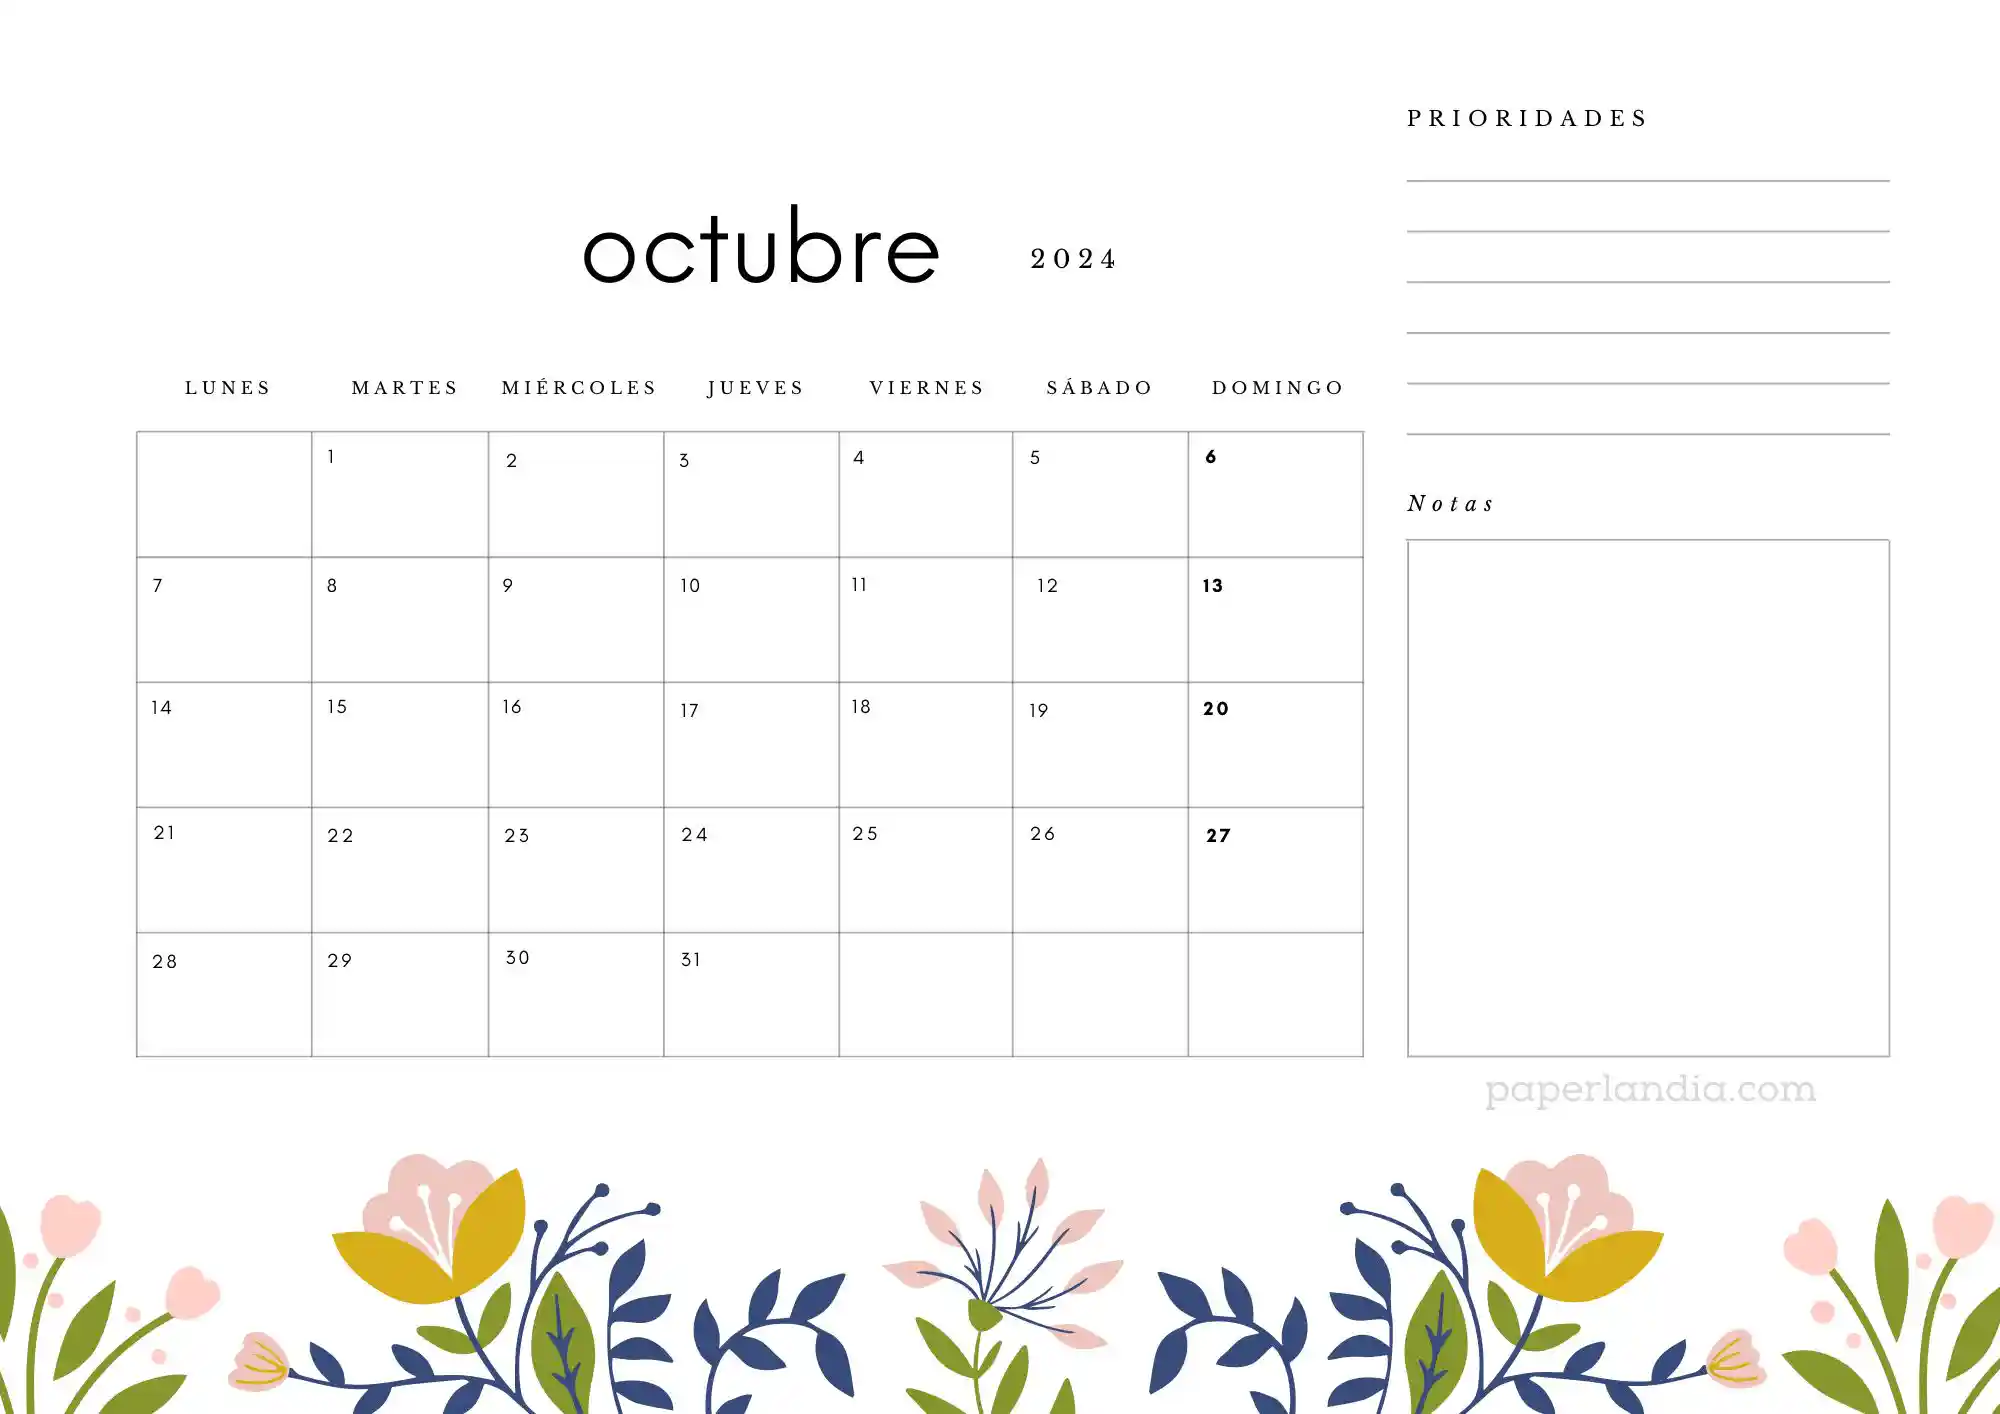 Calendario octubre 2024 horizontal con prioridades notas y flores escandinavas